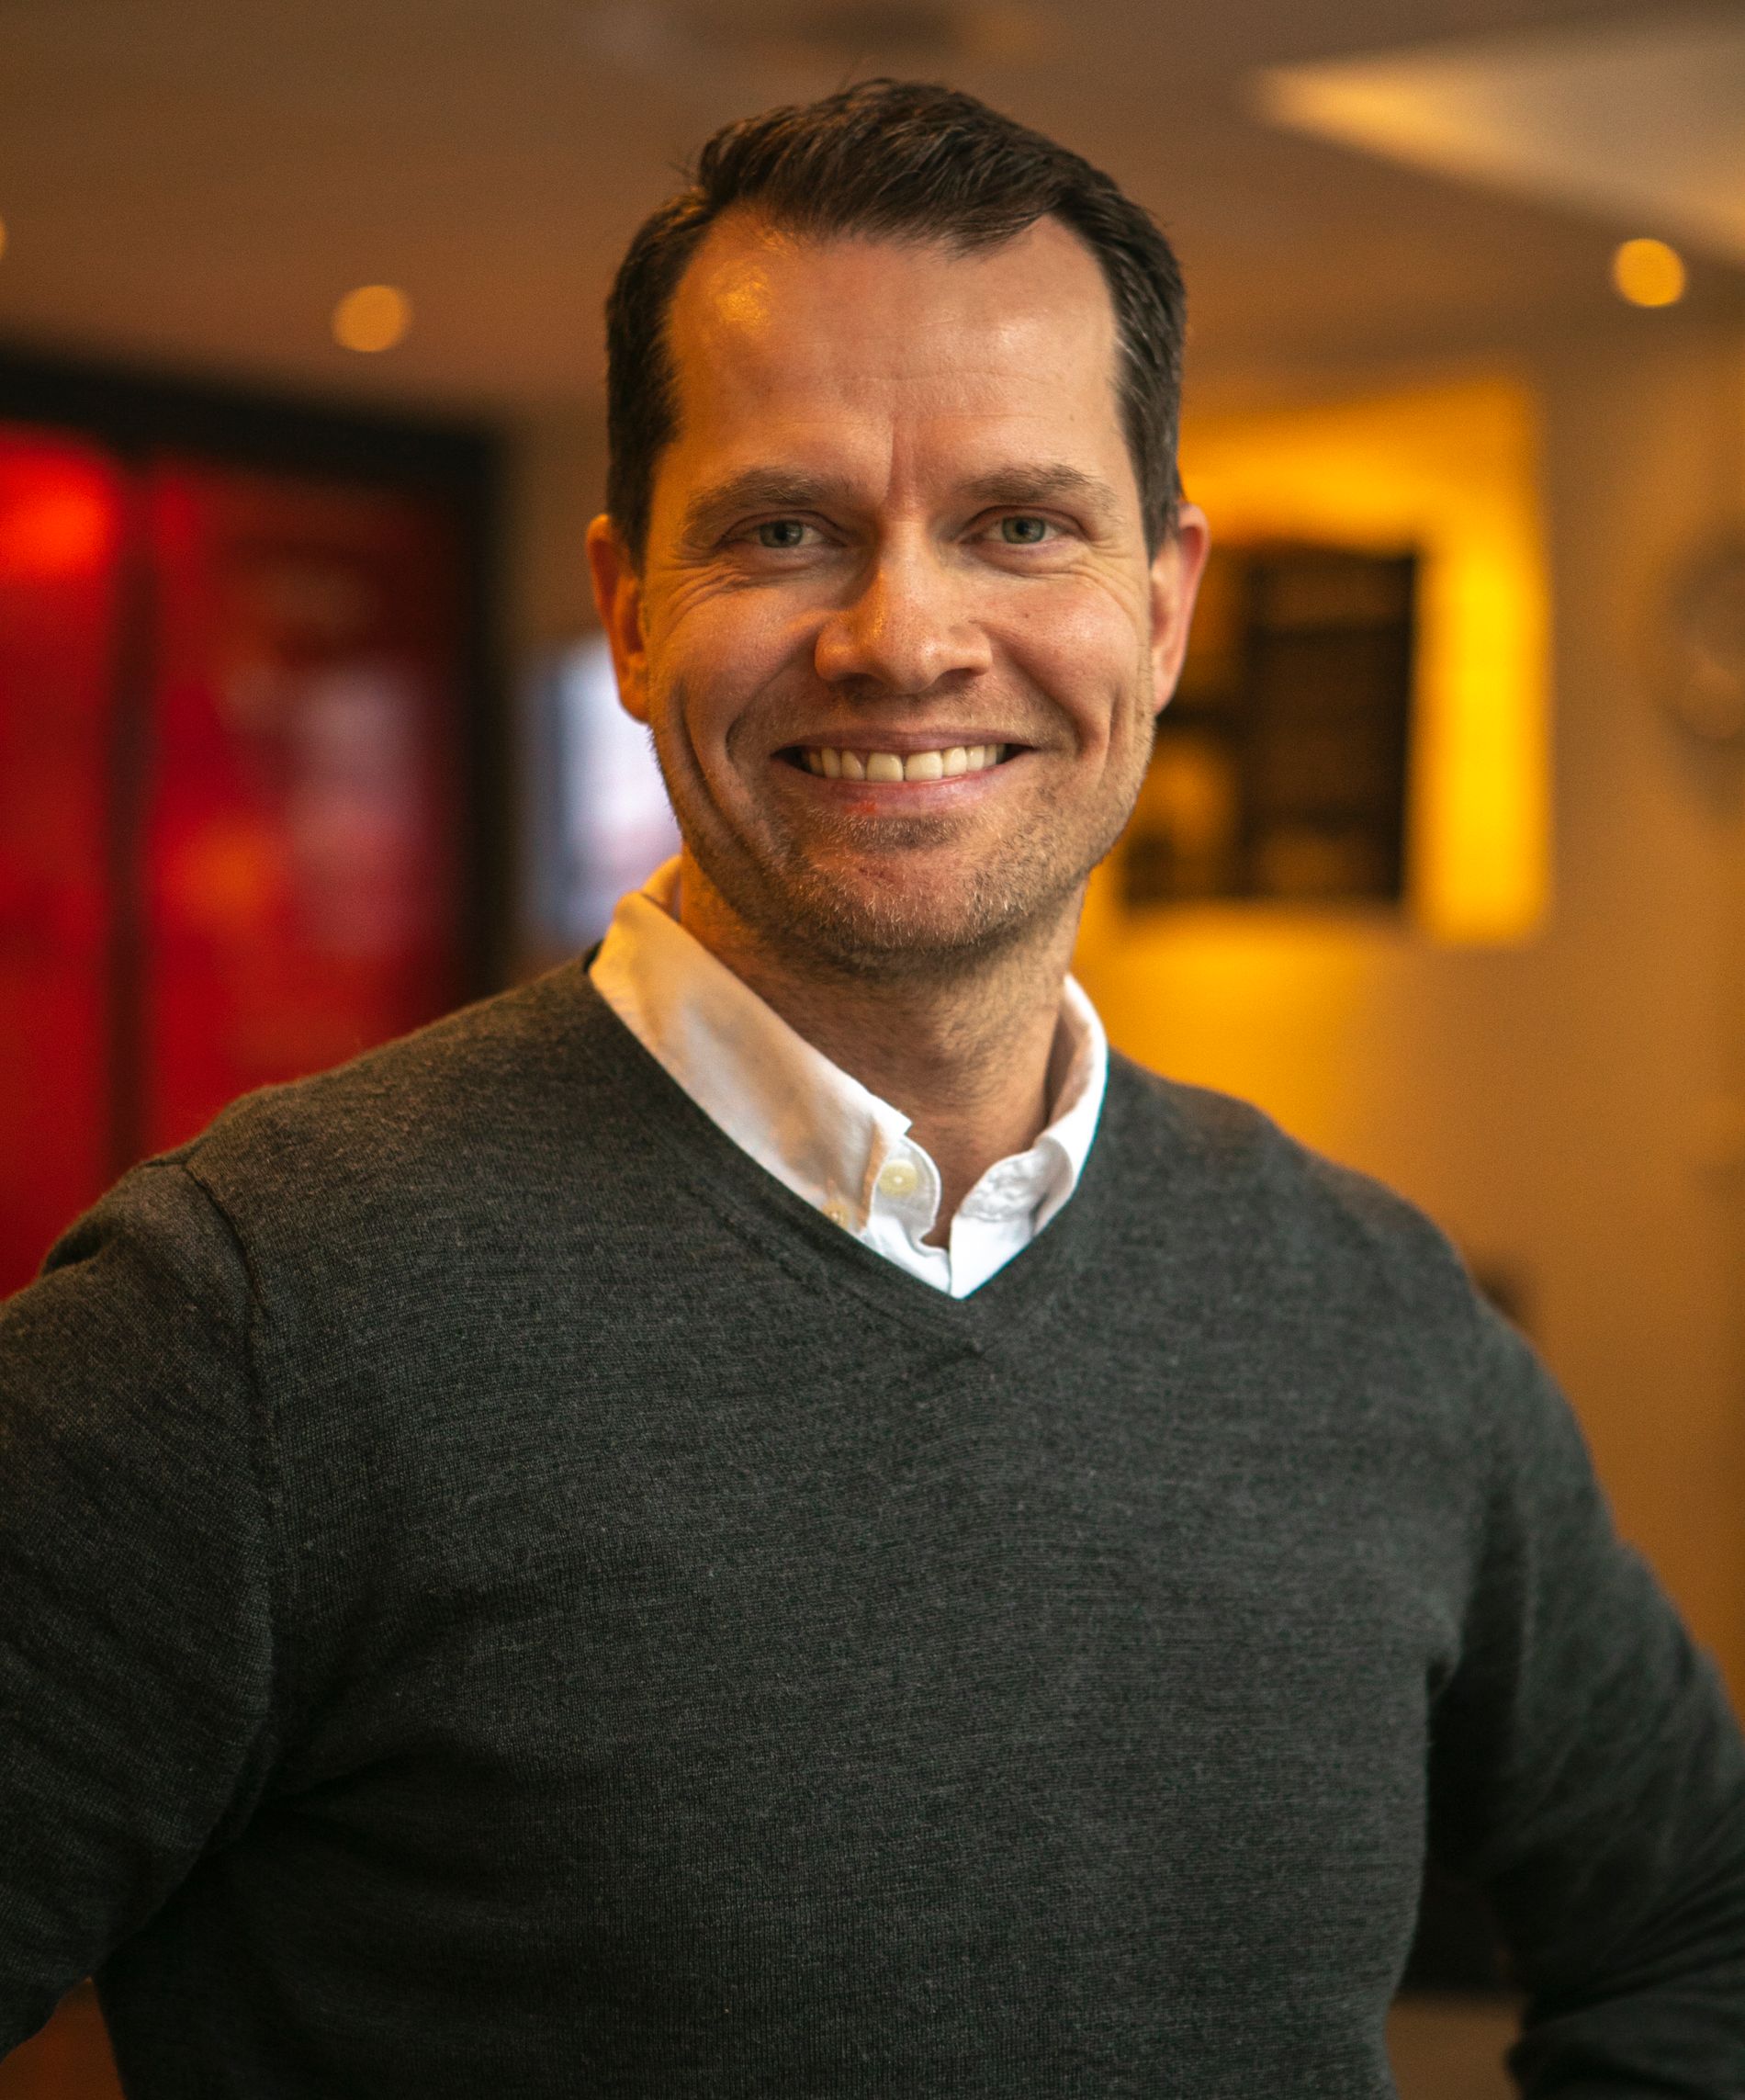 PRODUKTUTVIKLER: Ronny Jåsund-Pedersen fikk ideen om å utvikle appen da han jobbet i Redningsselskapet. 